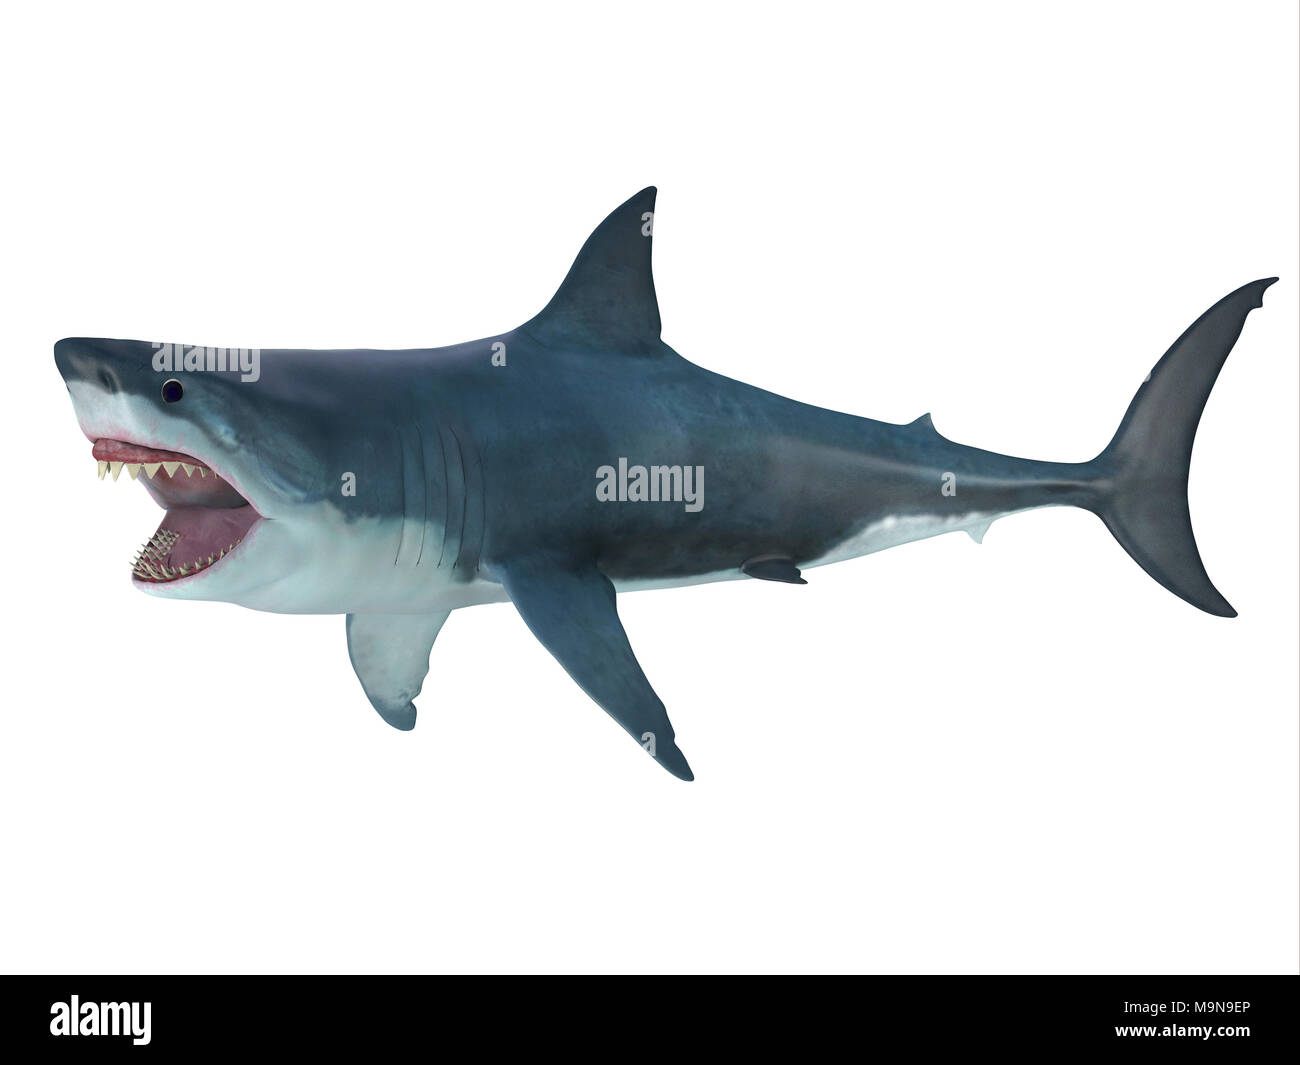 Megalodon squalo attacca la postura - preistoria Megalodon shark potrebbe crescere da 82 piedi di lunghezza e vissuto durante il Miocene al Pliocene periodi. Foto Stock